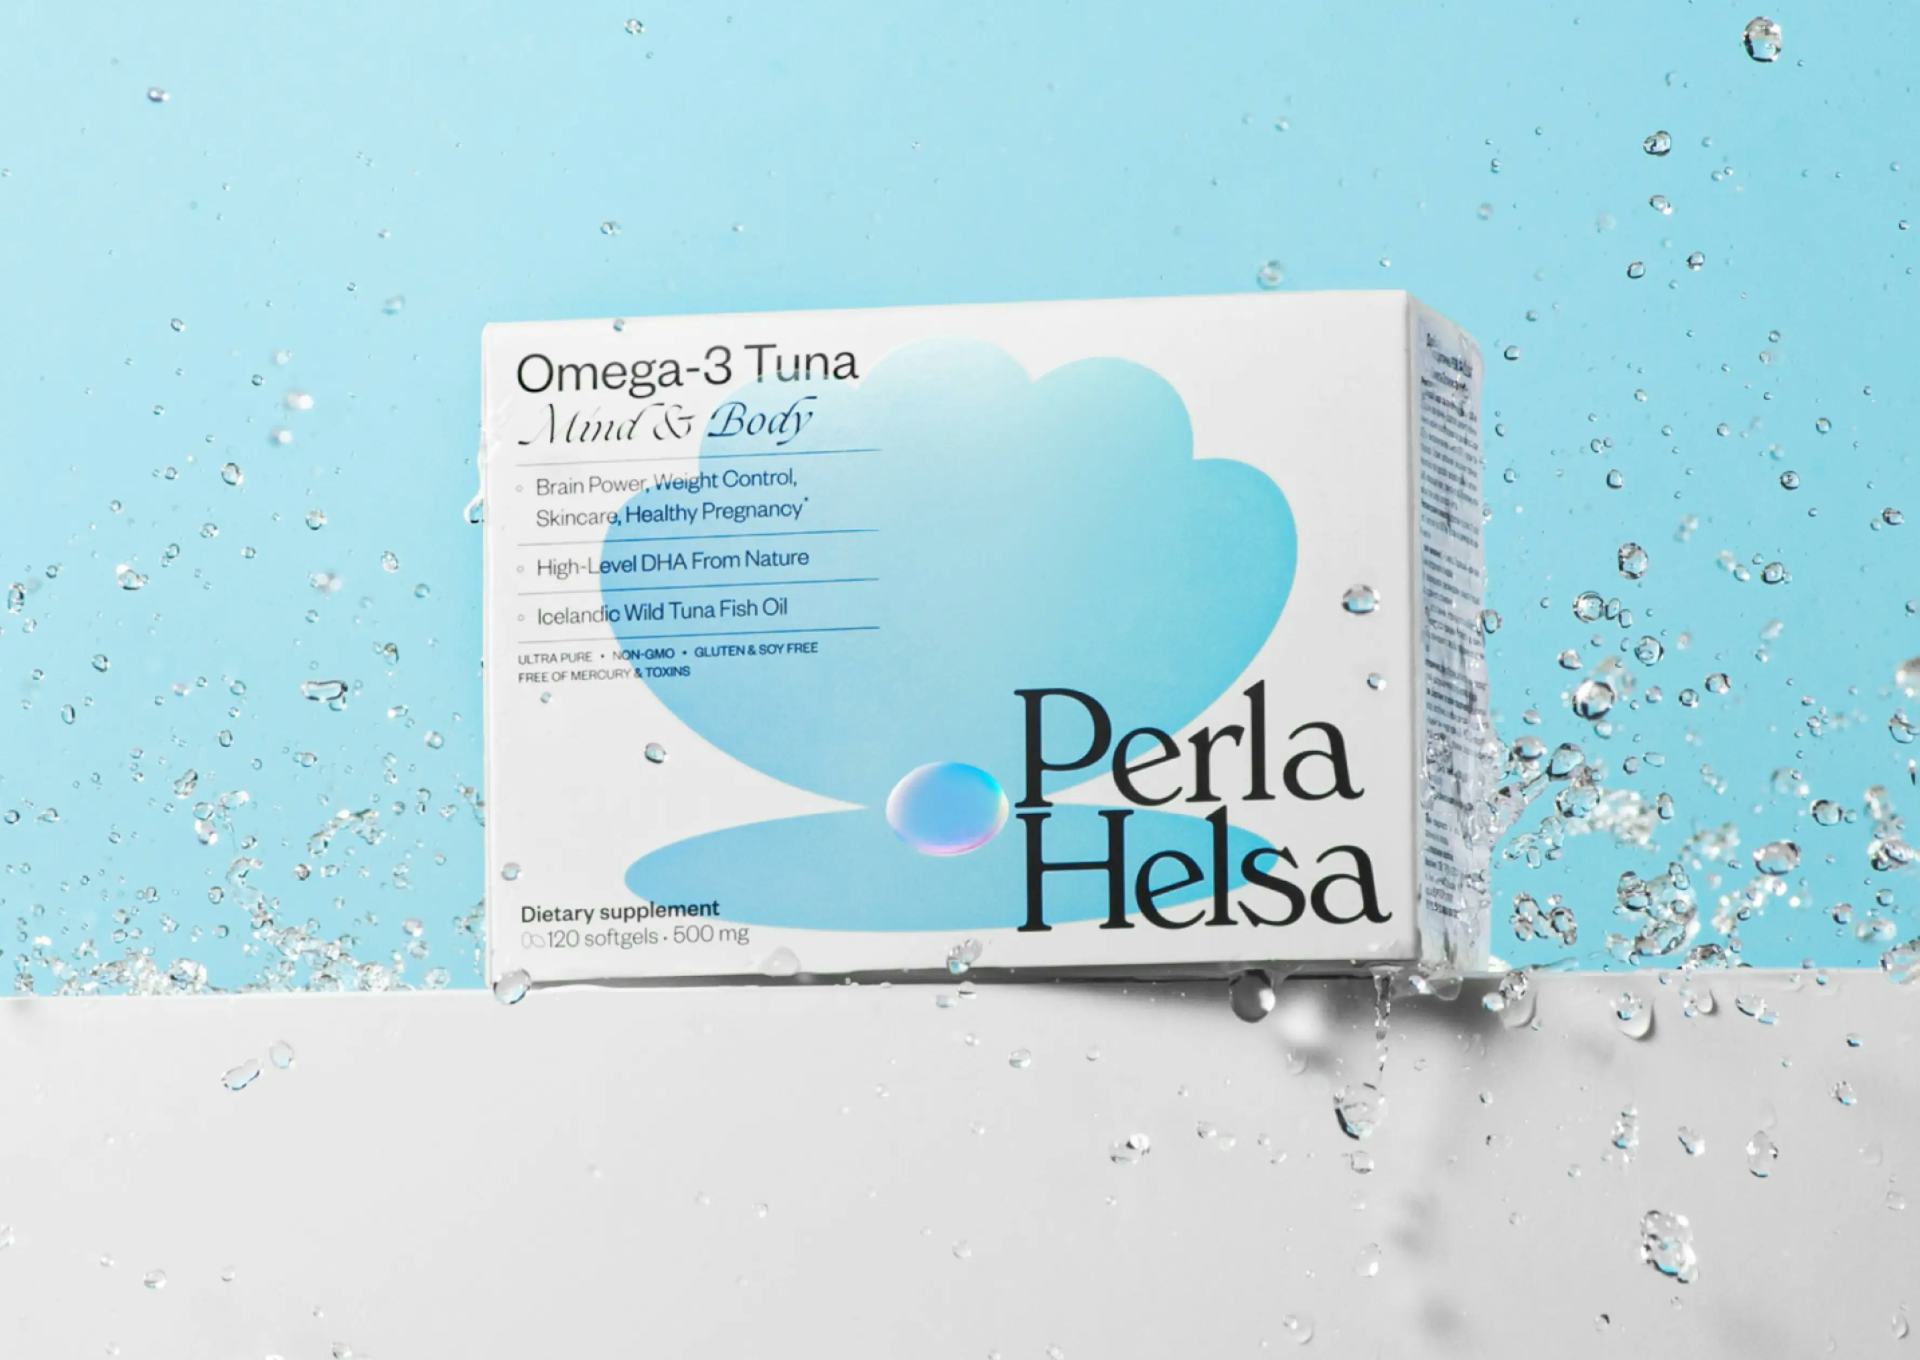 Omega-3 Tuna